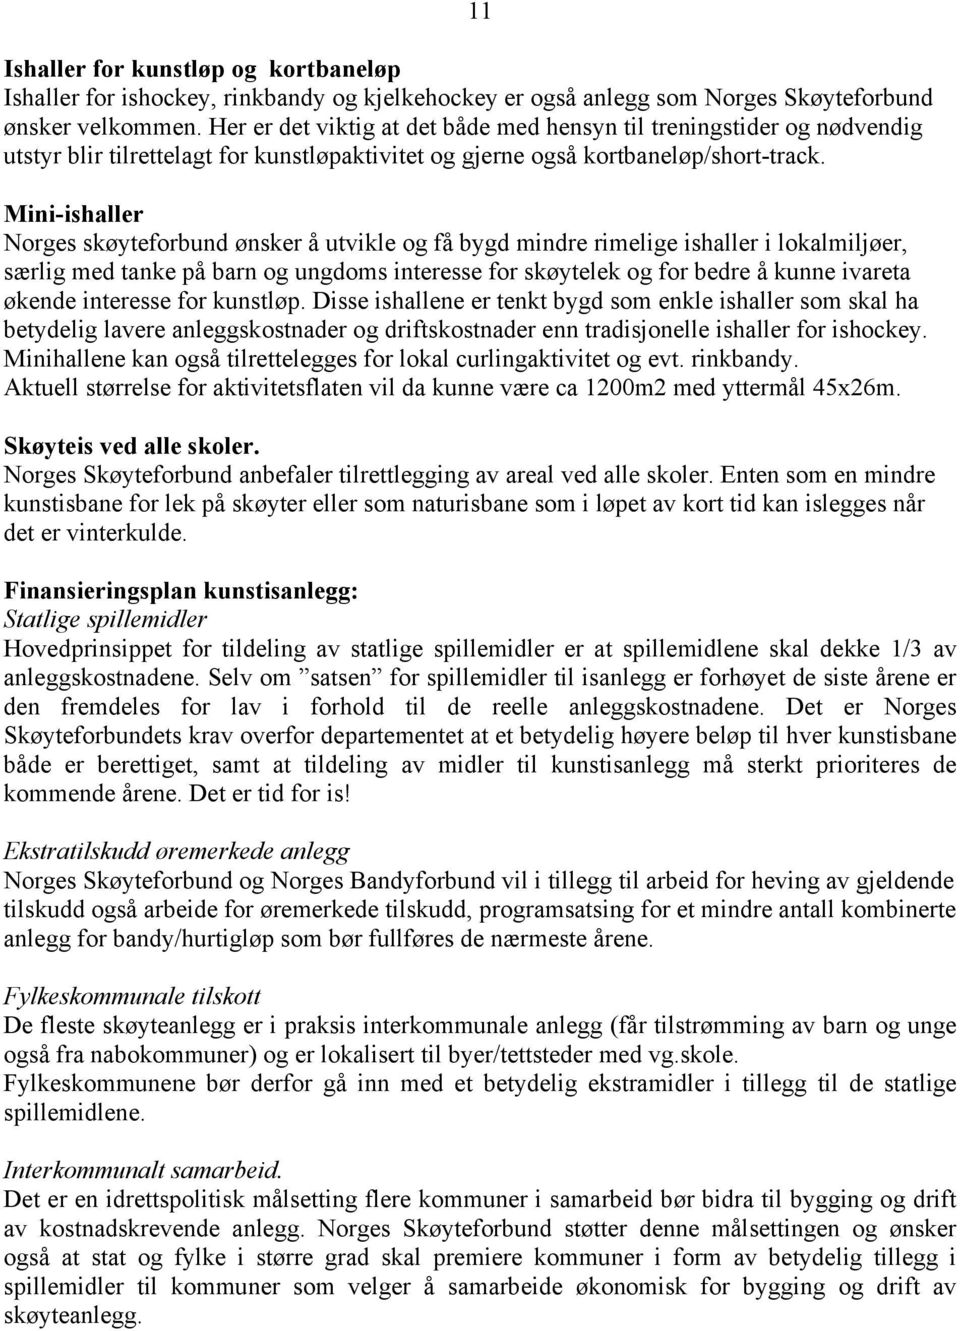 Mini-ishaller Norges skøyteforbund ønsker å utvikle og få bygd mindre rimelige ishaller i lokalmiljøer, særlig med tanke på barn og ungdoms interesse for skøytelek og for bedre å kunne ivareta økende